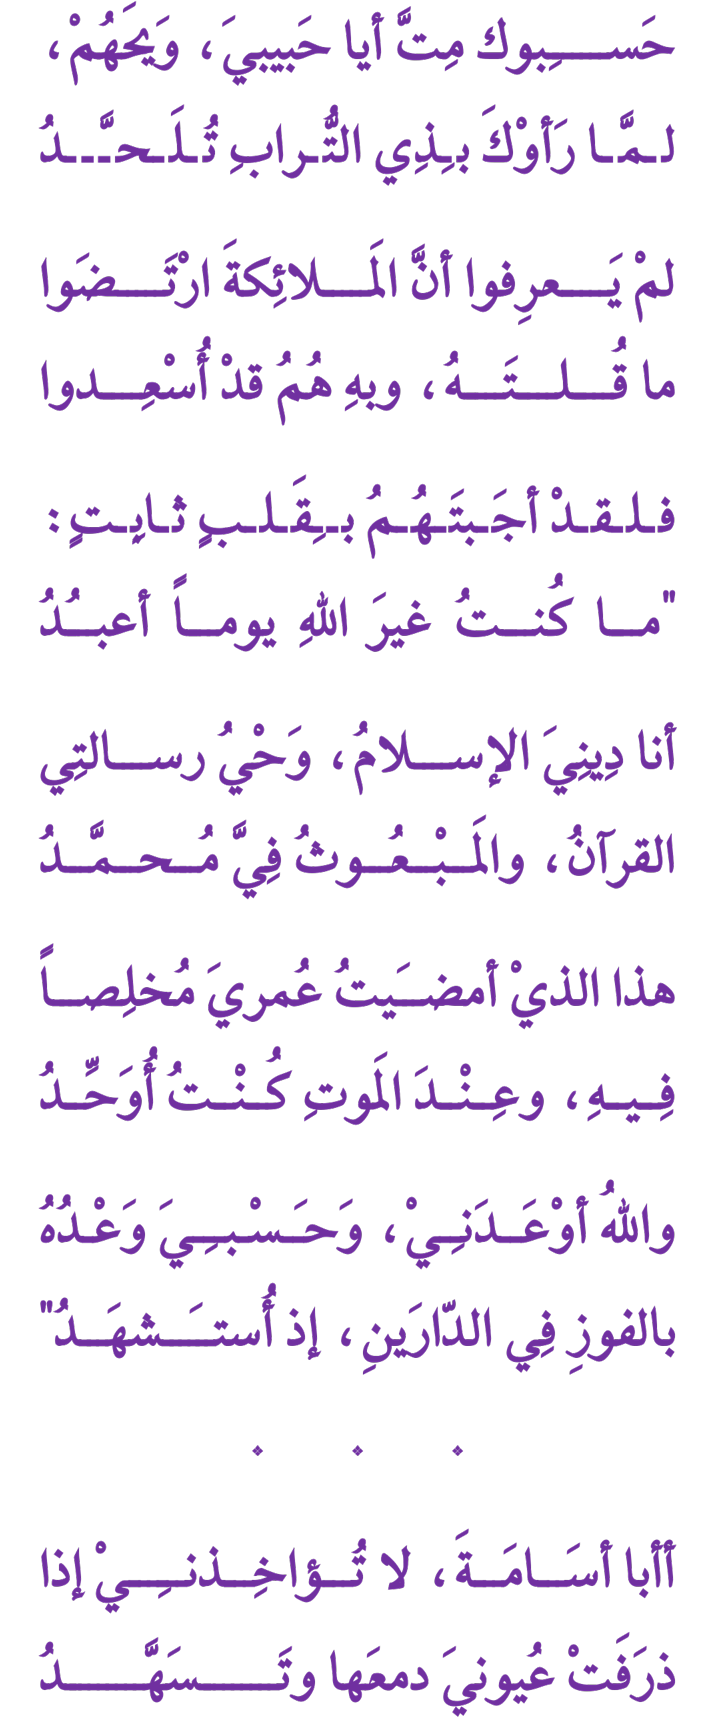 MaherAbdullah02-Poem-KhalidAlMahmoud